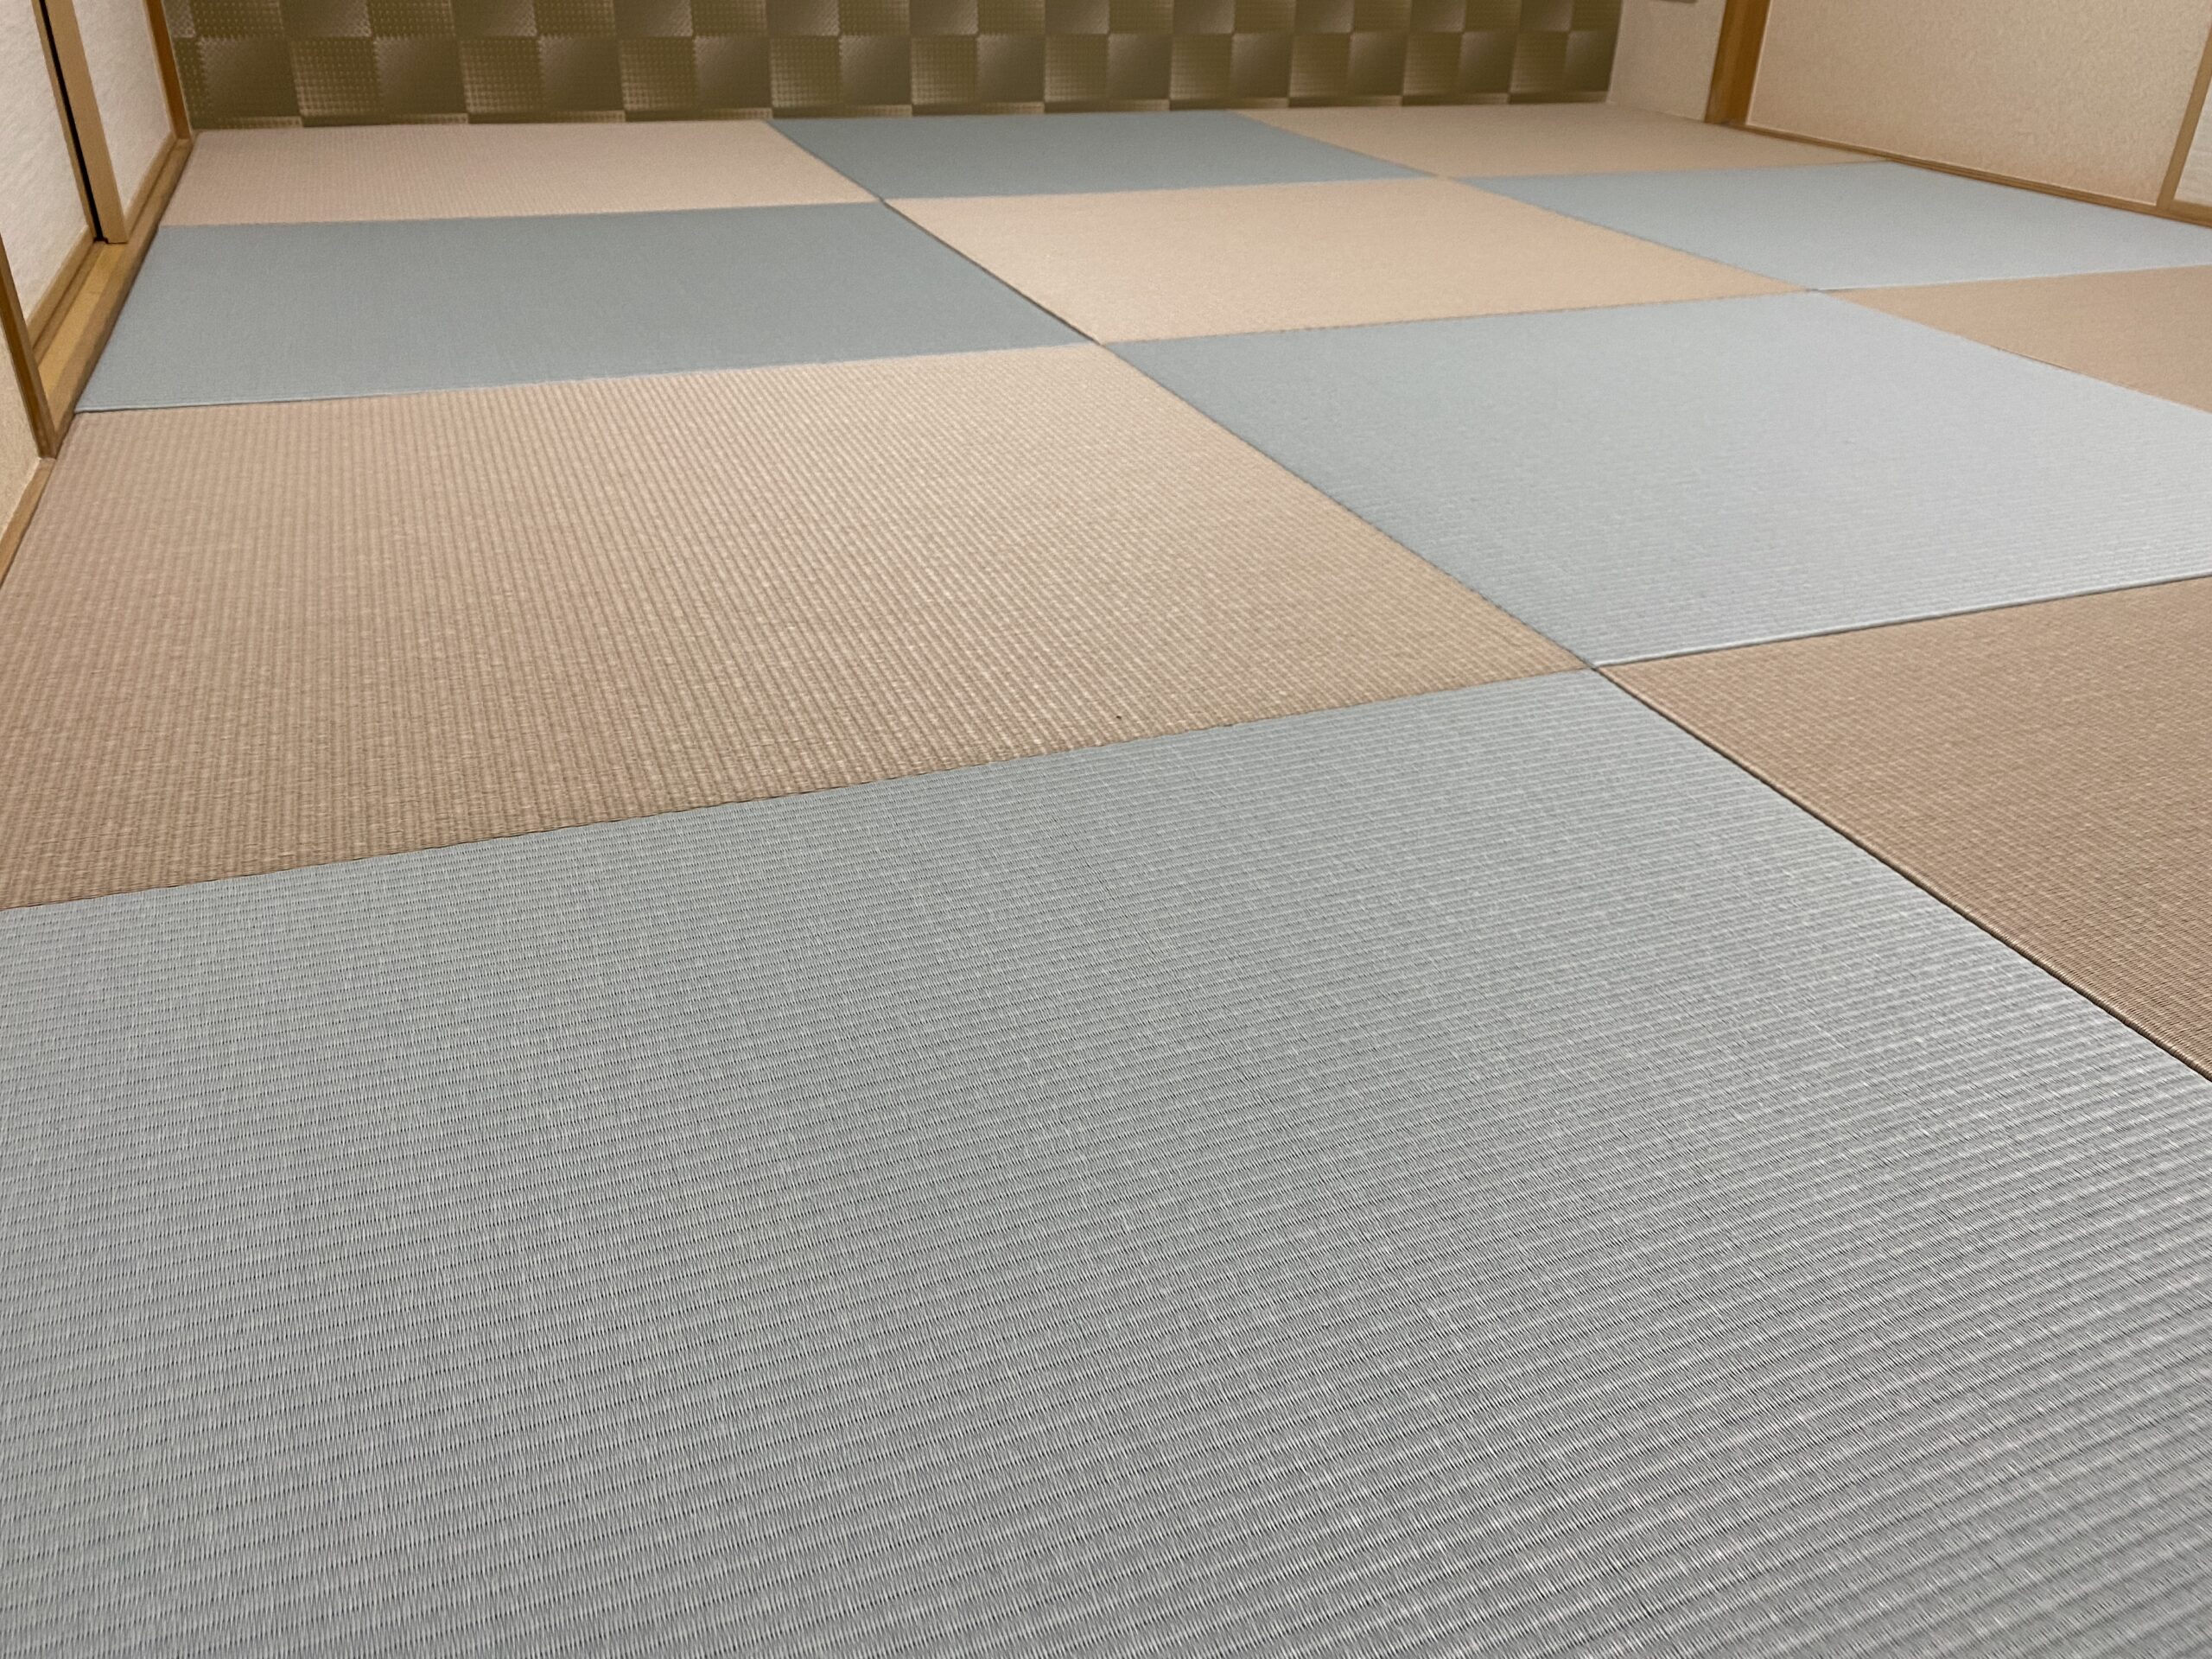 琉球畳の清流表（青磁色と白茶色）